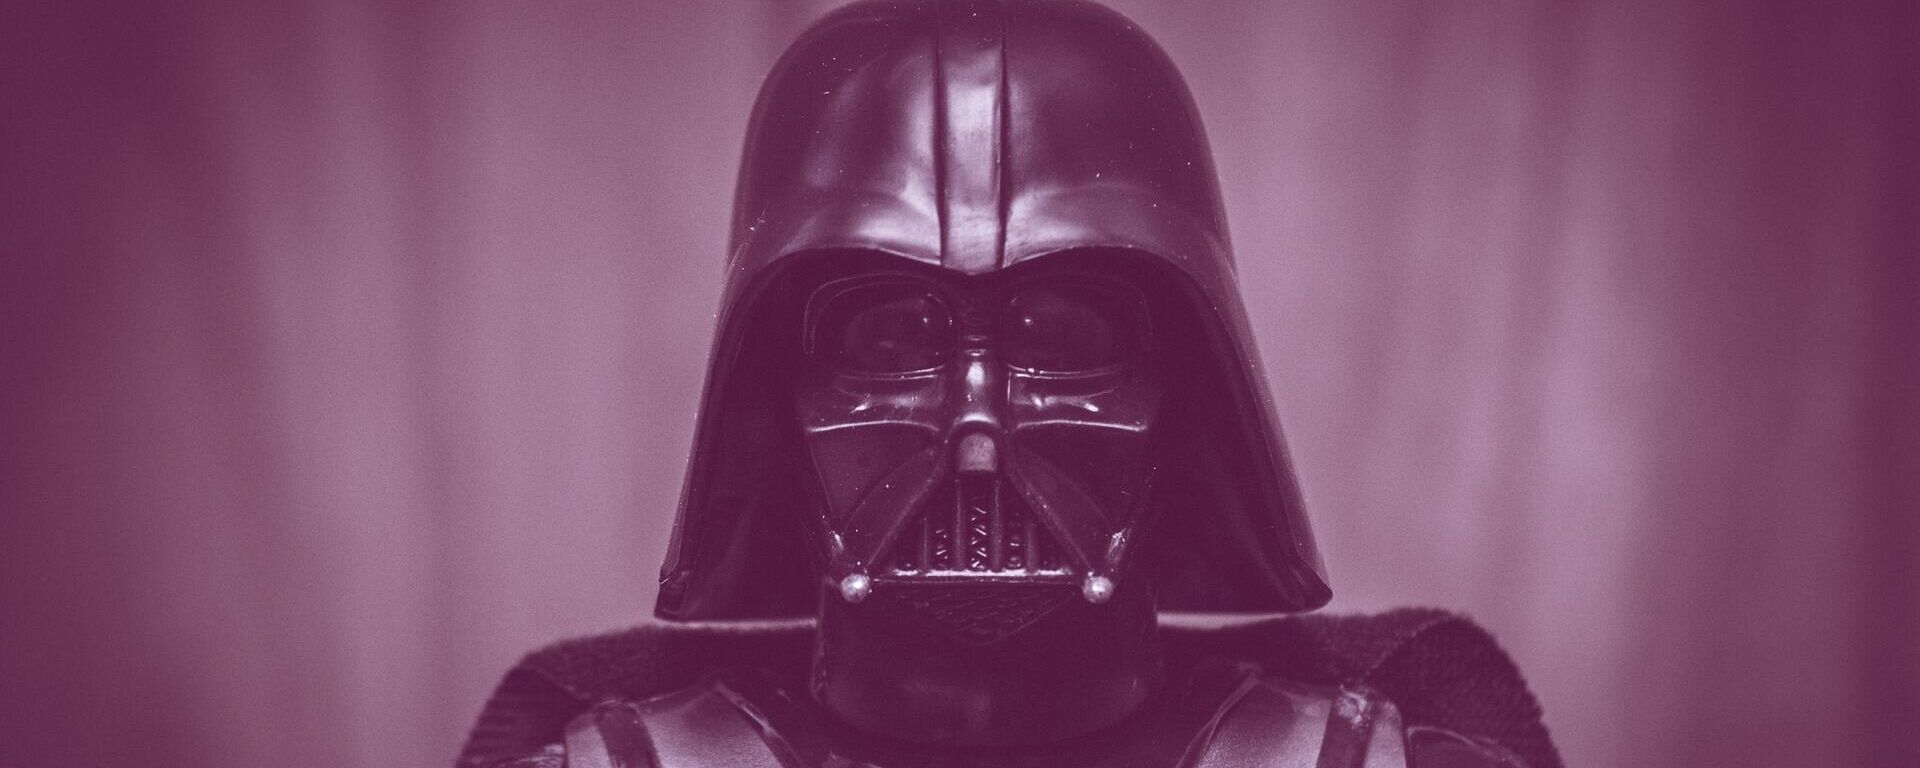 Una figura del personaje Darth Vader, de la saga de 'Star Wars' o 'La Guerra de las Galaxias' - Sputnik Mundo, 1920, 28.07.2021